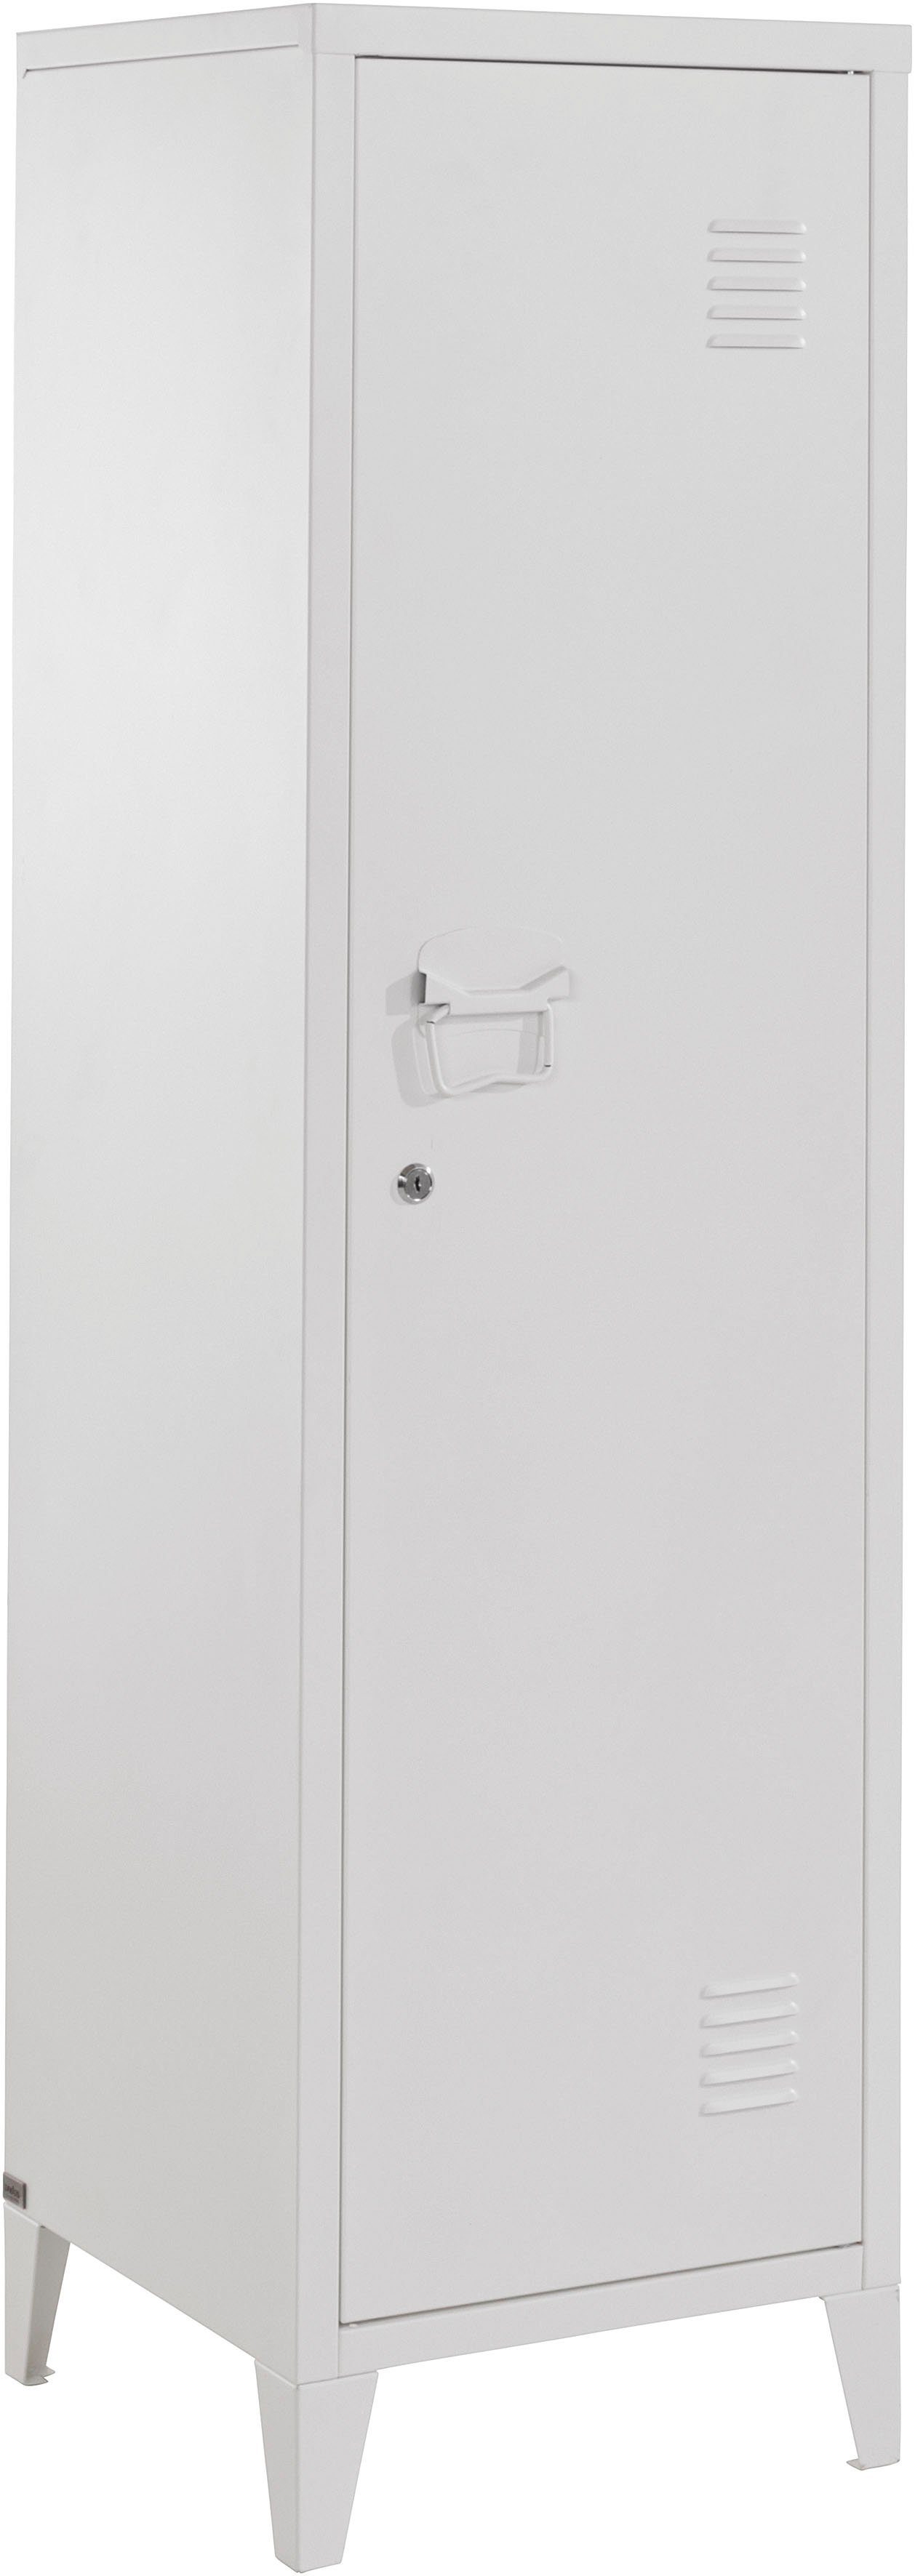 andas Midischrank Jensjorg Midischrank aus Metall, 2 x Einlegeböden hinter der Tür, Höhe 137 cm weiß